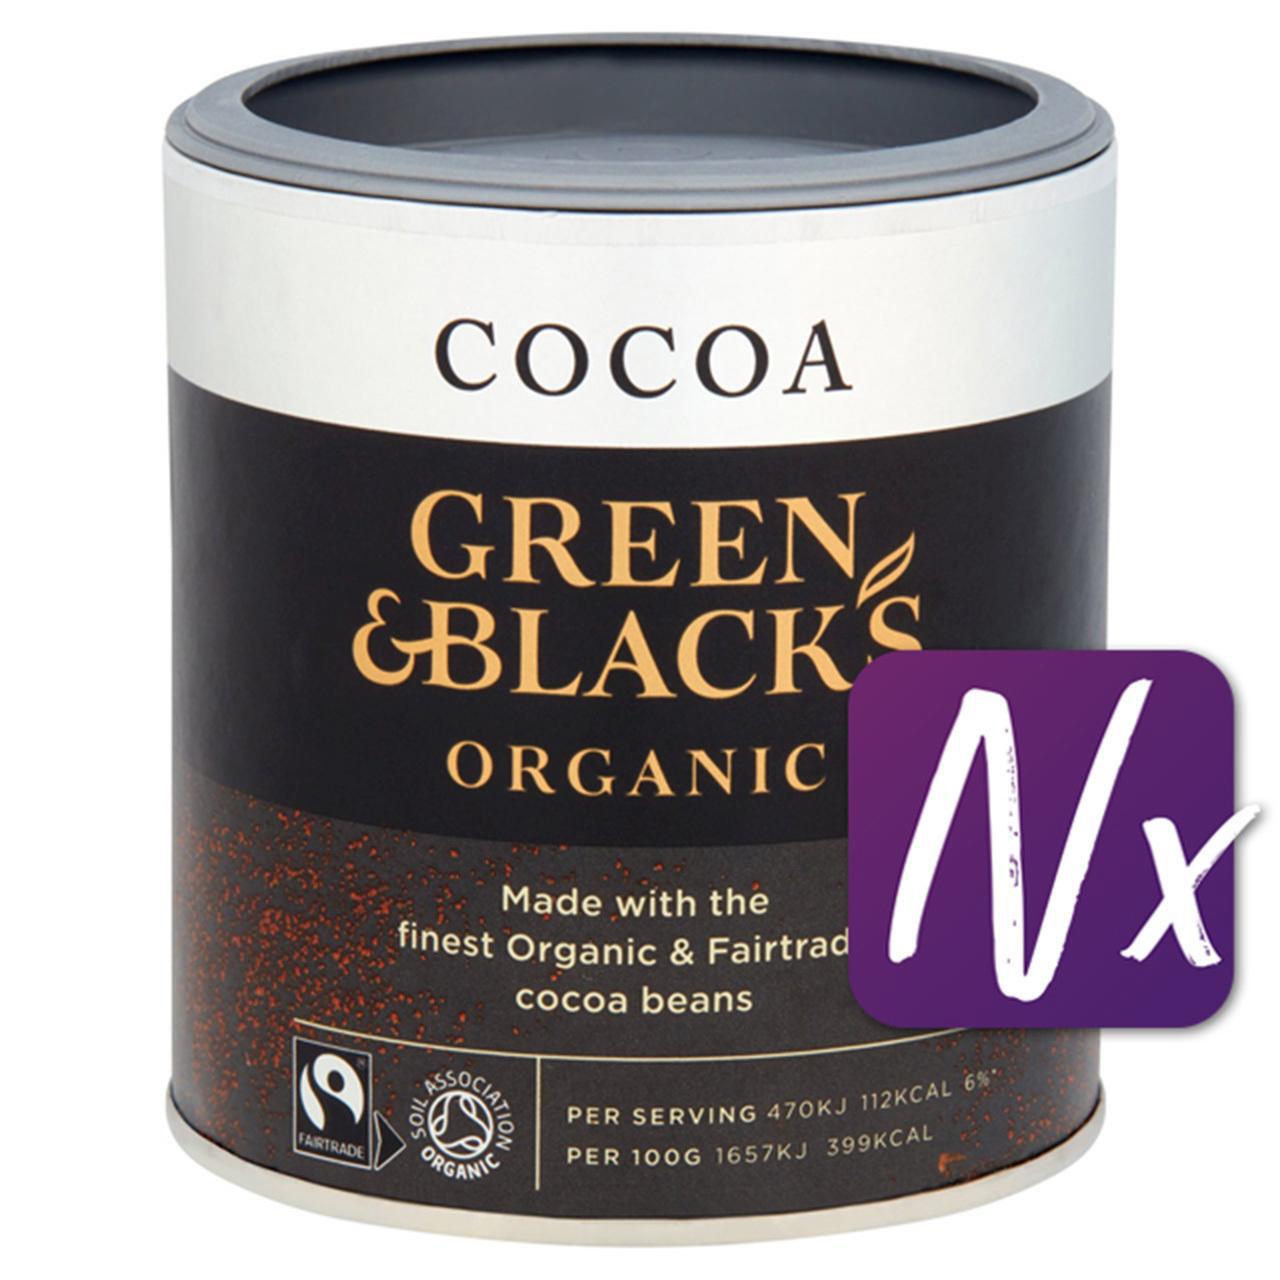 Green & Black's Fairtrade Organic Cocoa 125g